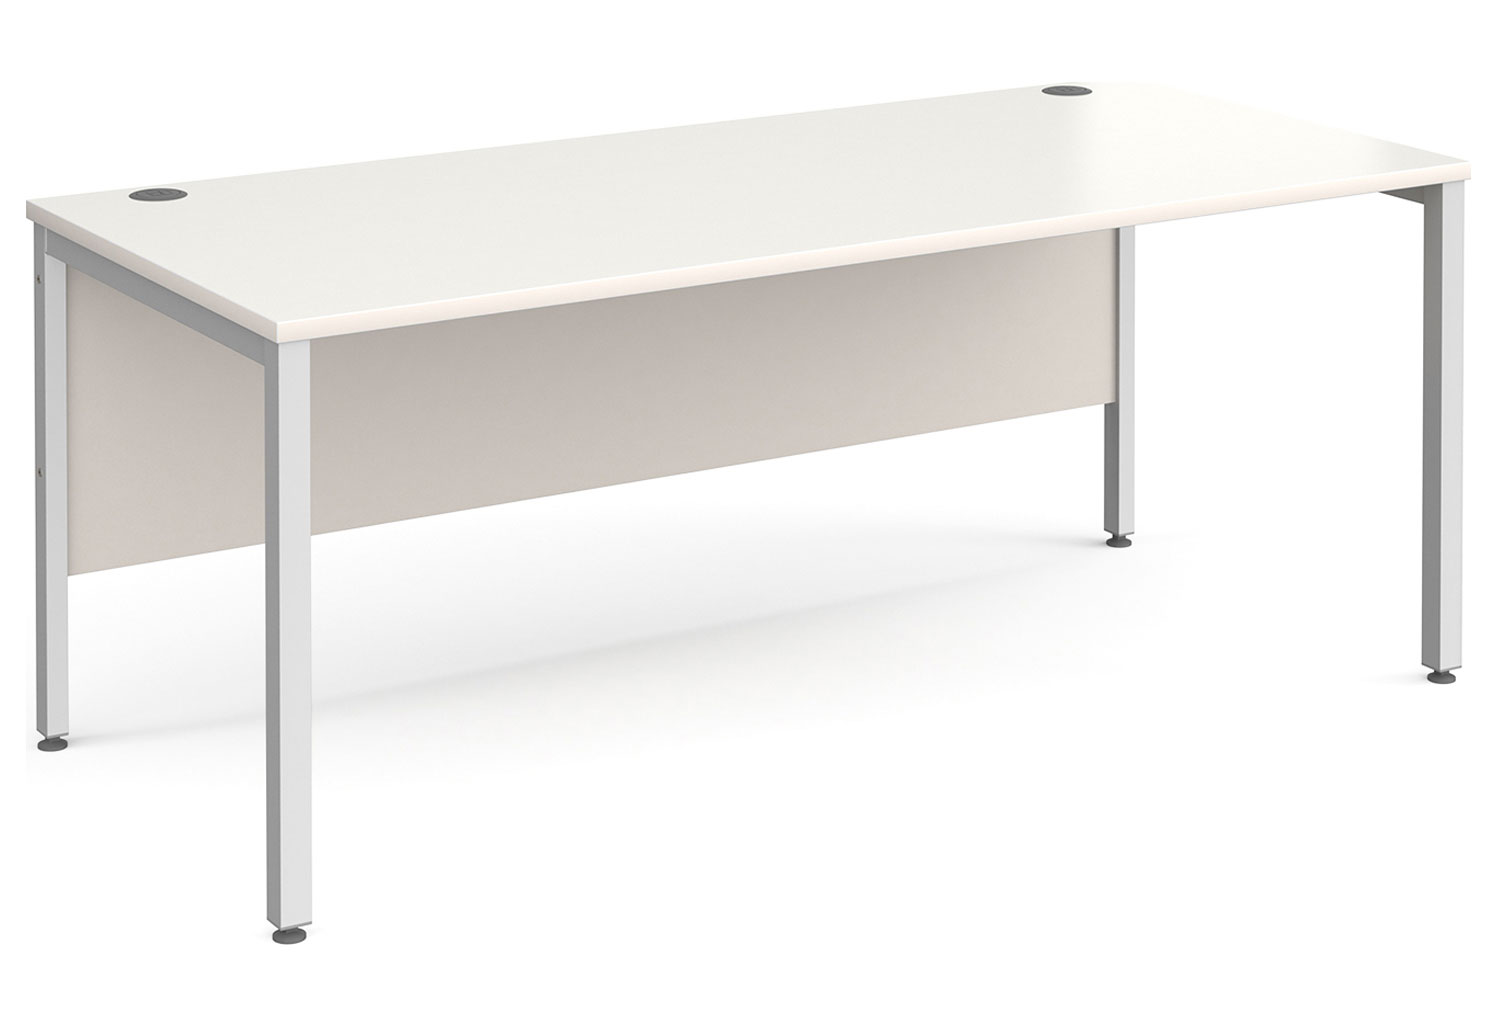 Tully Bench Rectangular Office Desk 180wx80dx73h (cm), White